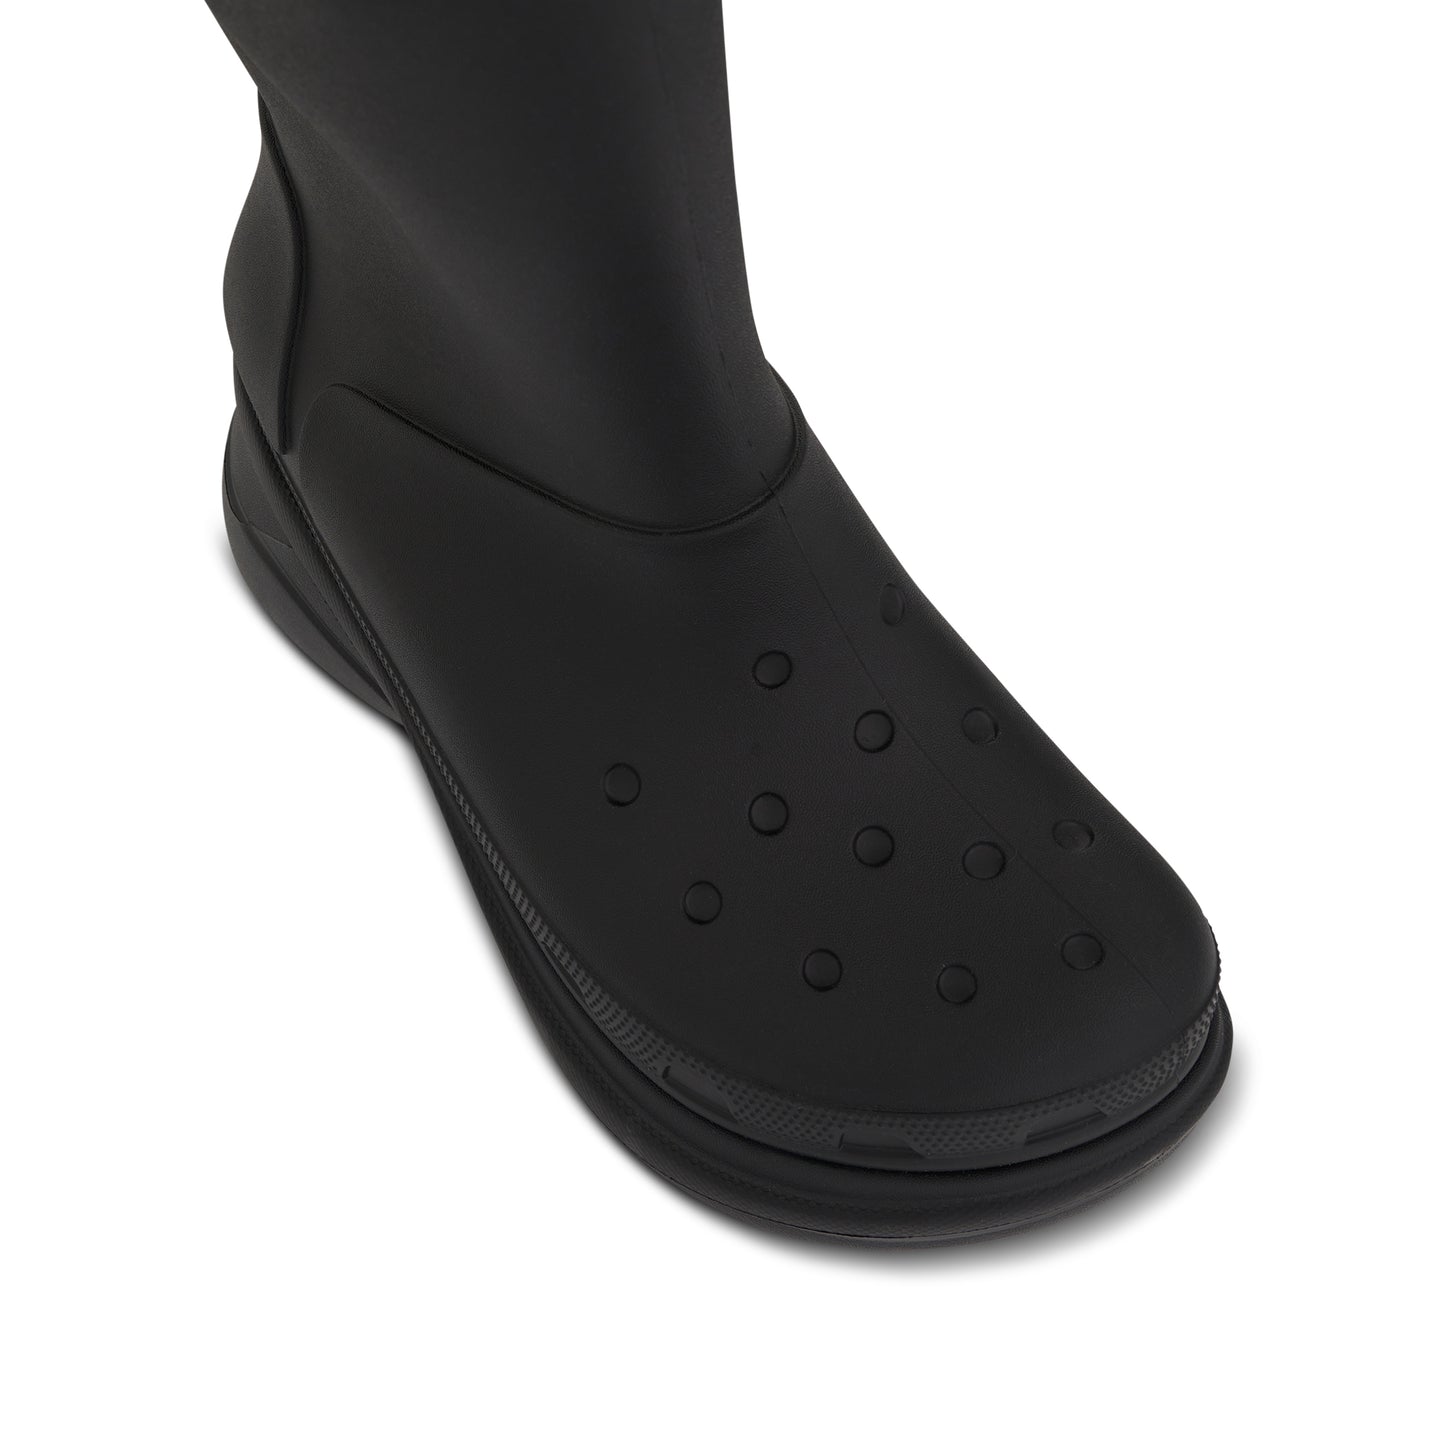 Crocs Boot in Black